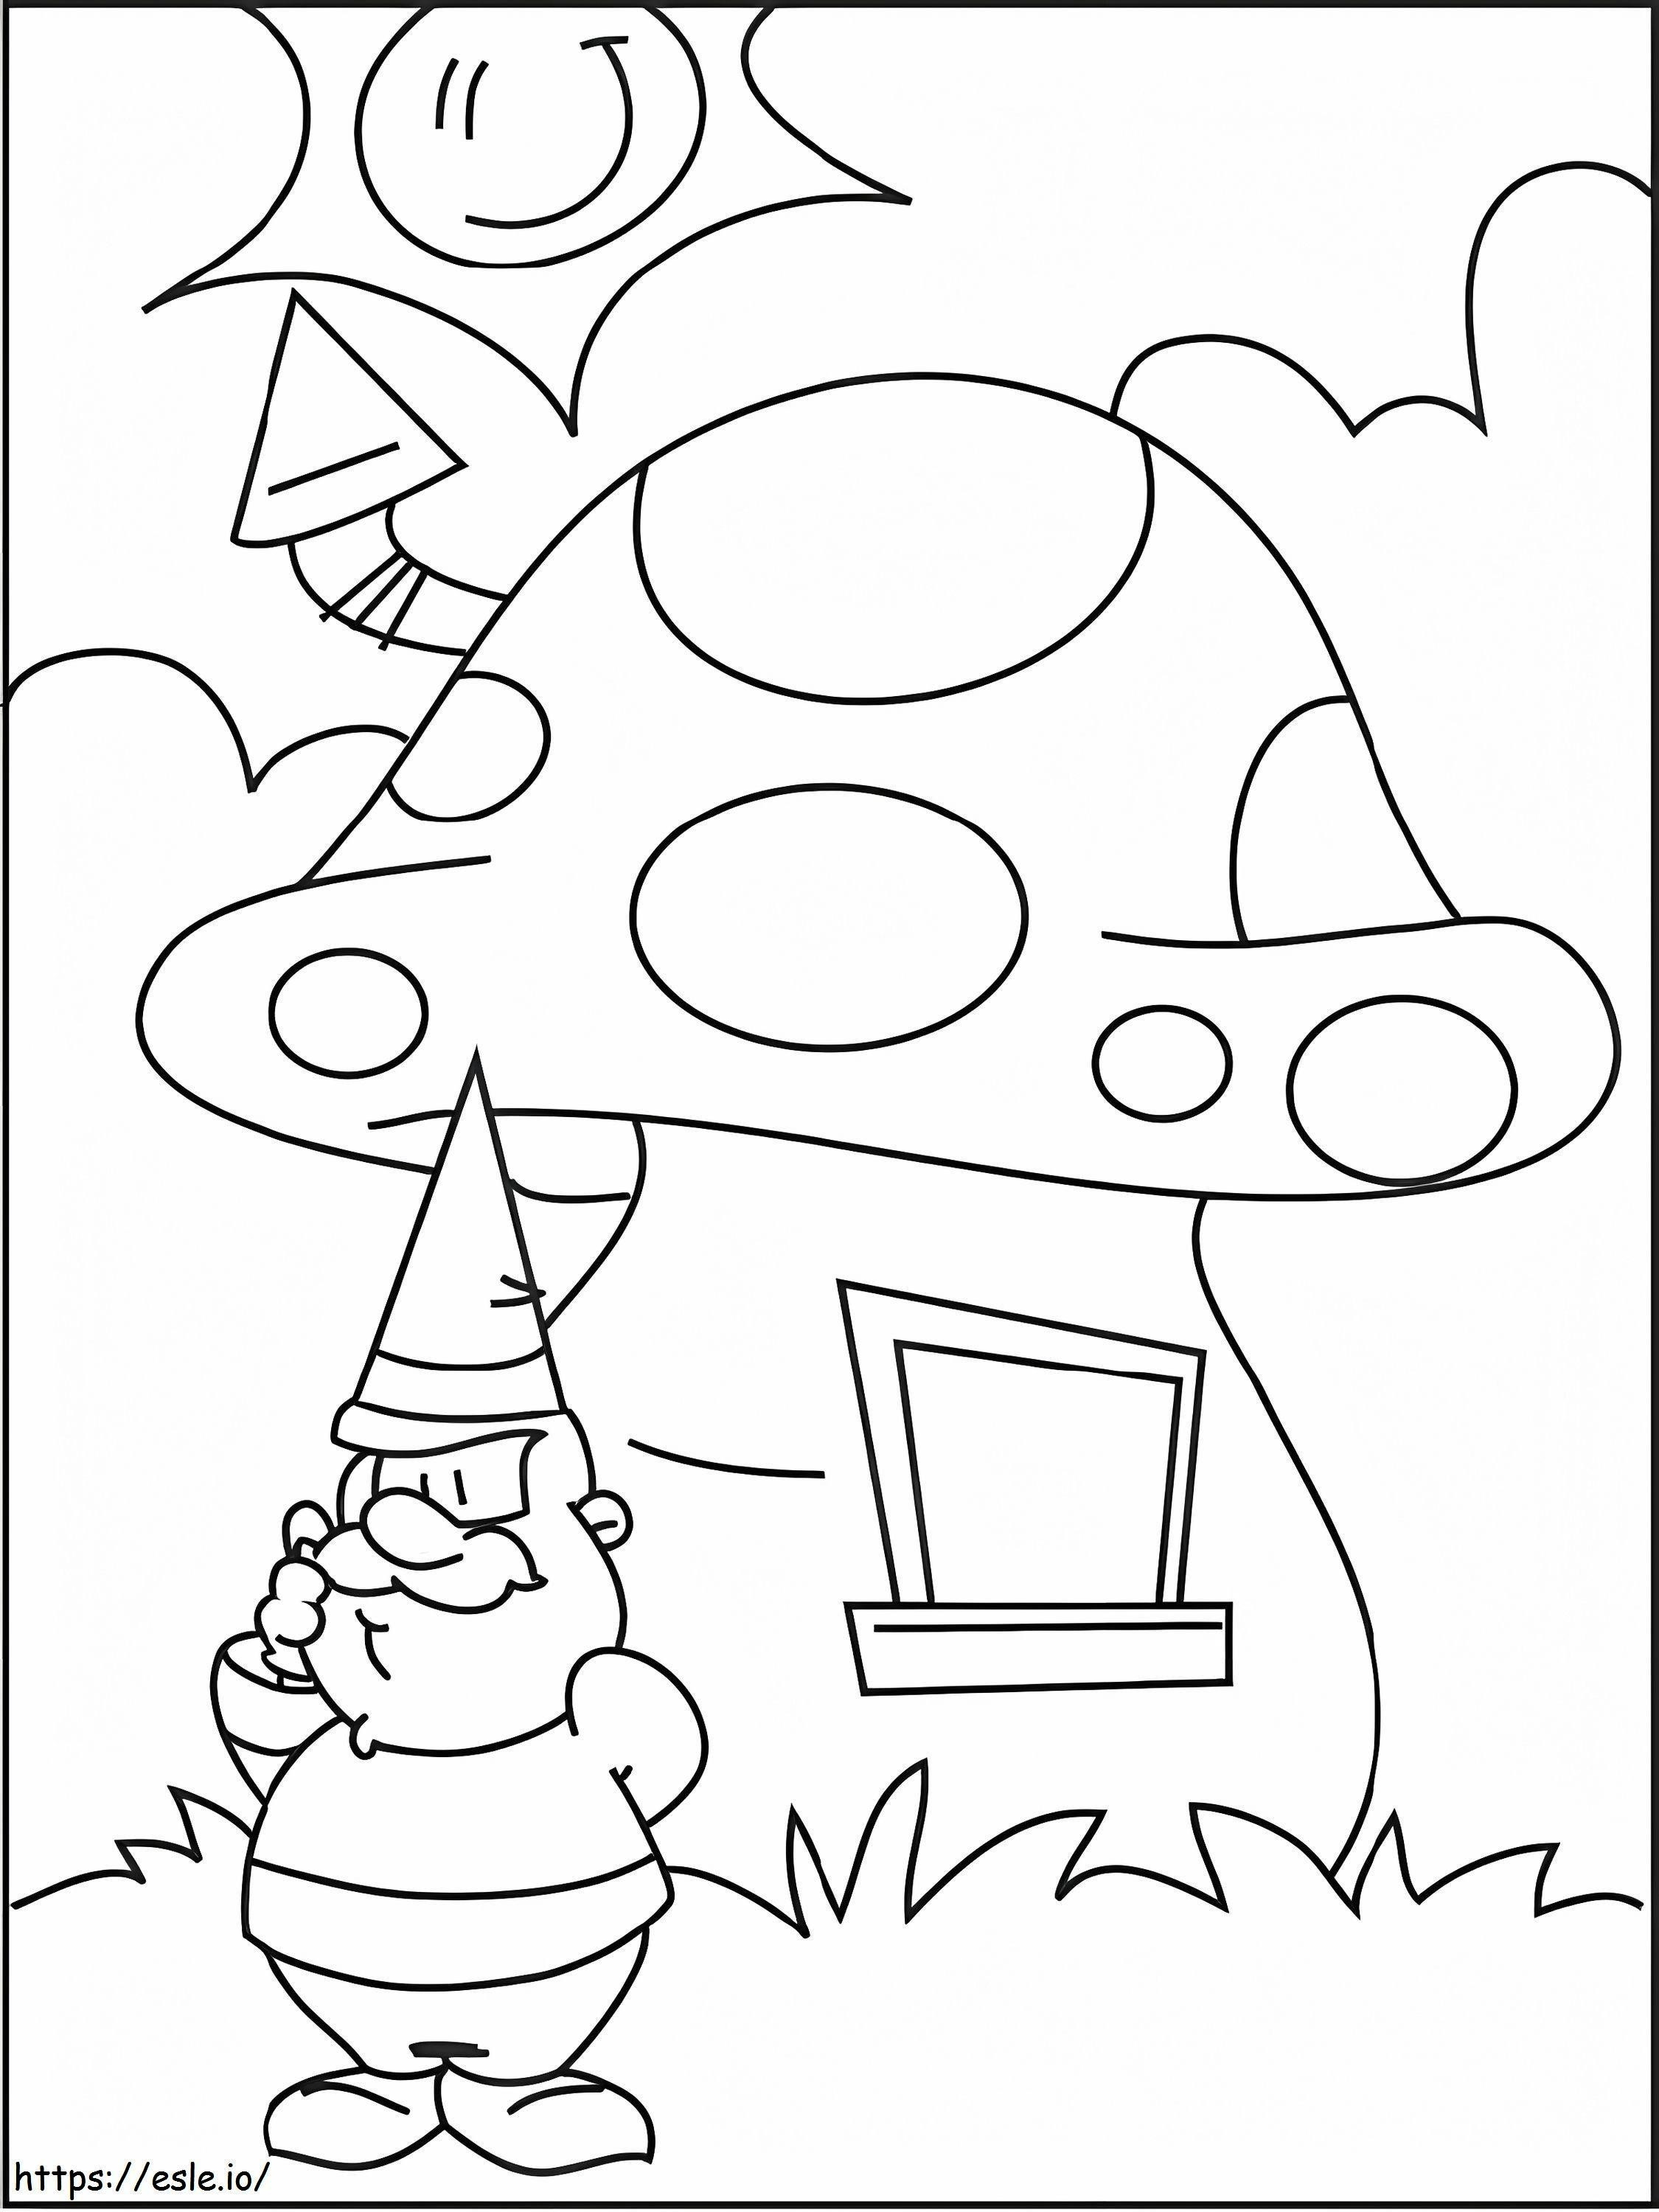 Coloriage David le Gnome 6 à imprimer dessin